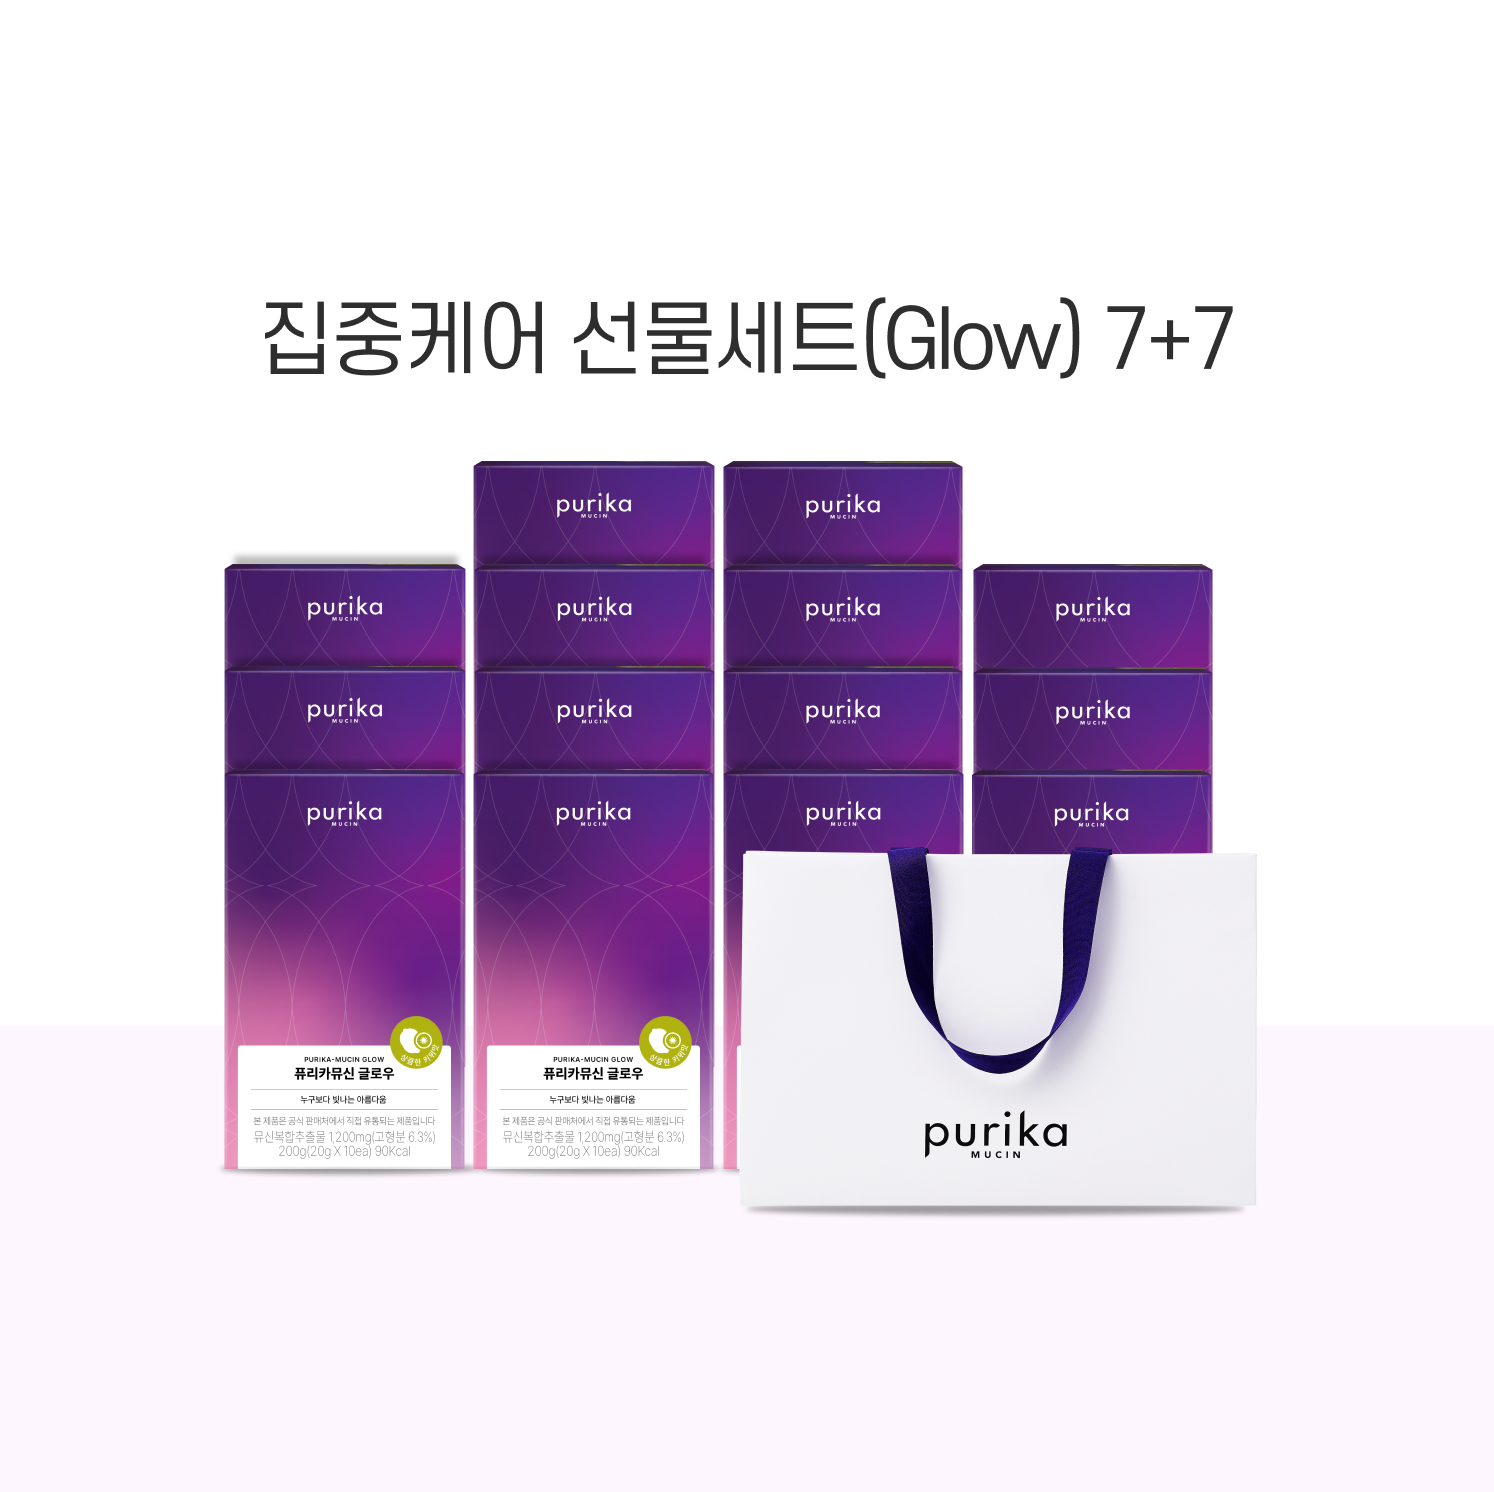 [기간한정] 뮤신 Glow 7+7 선물세트 (14box,140일) + 쇼핑백 증정(1매)